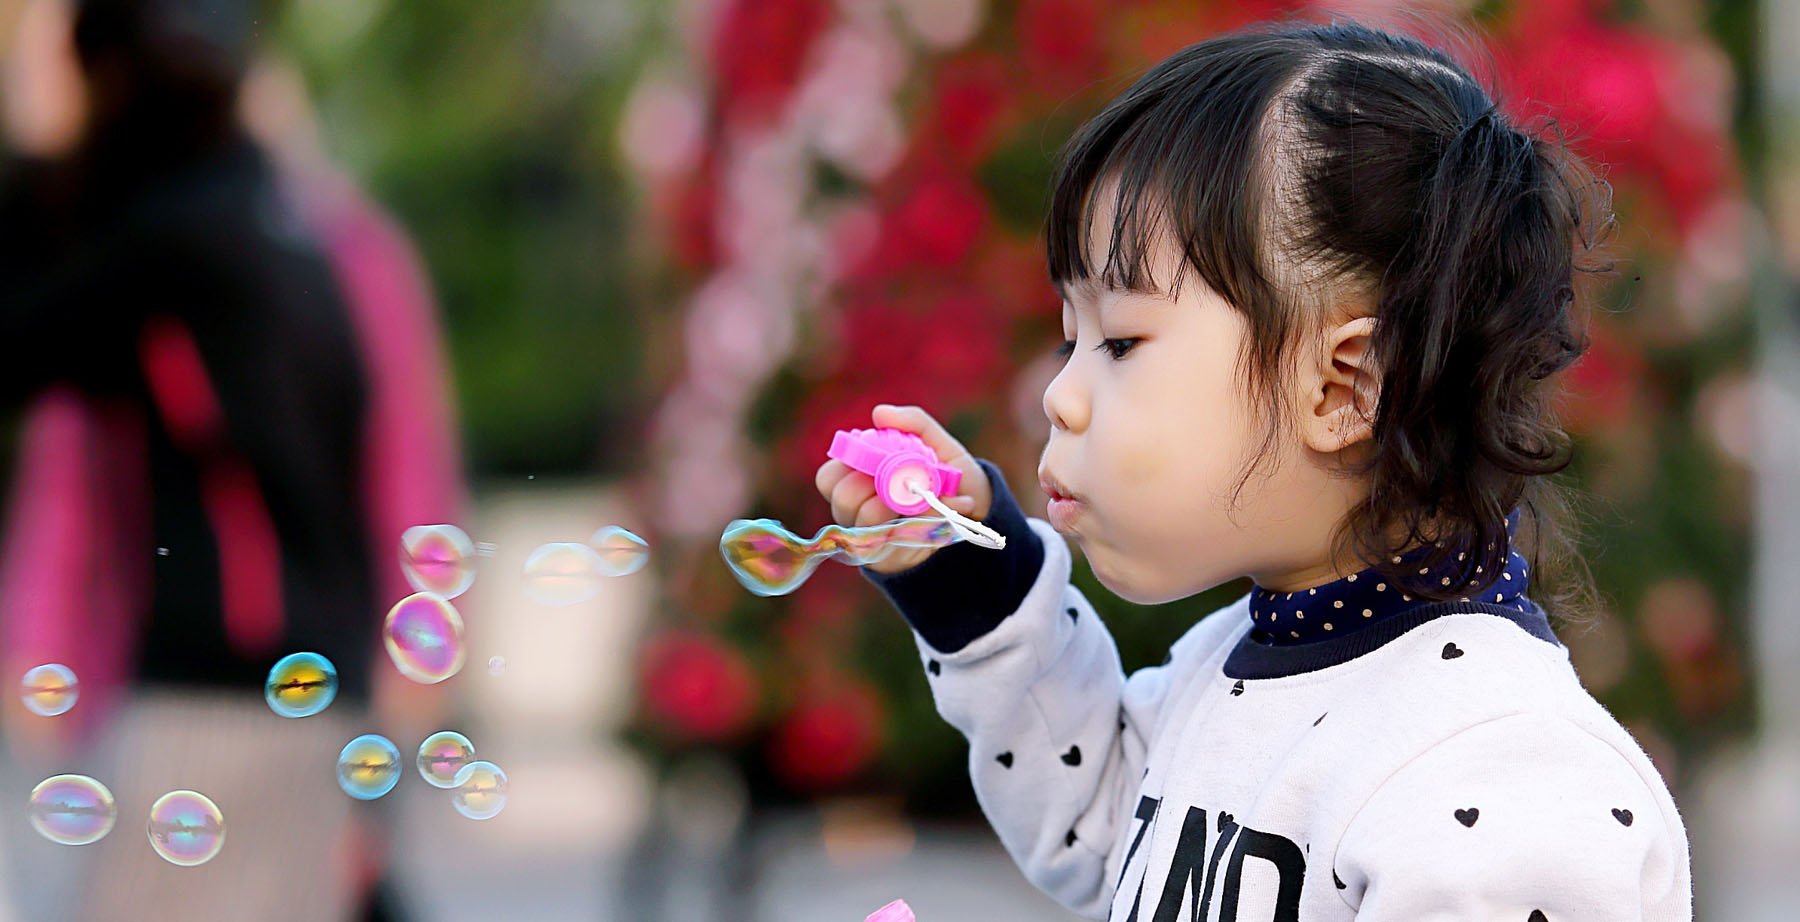 Little girl blowing bubble